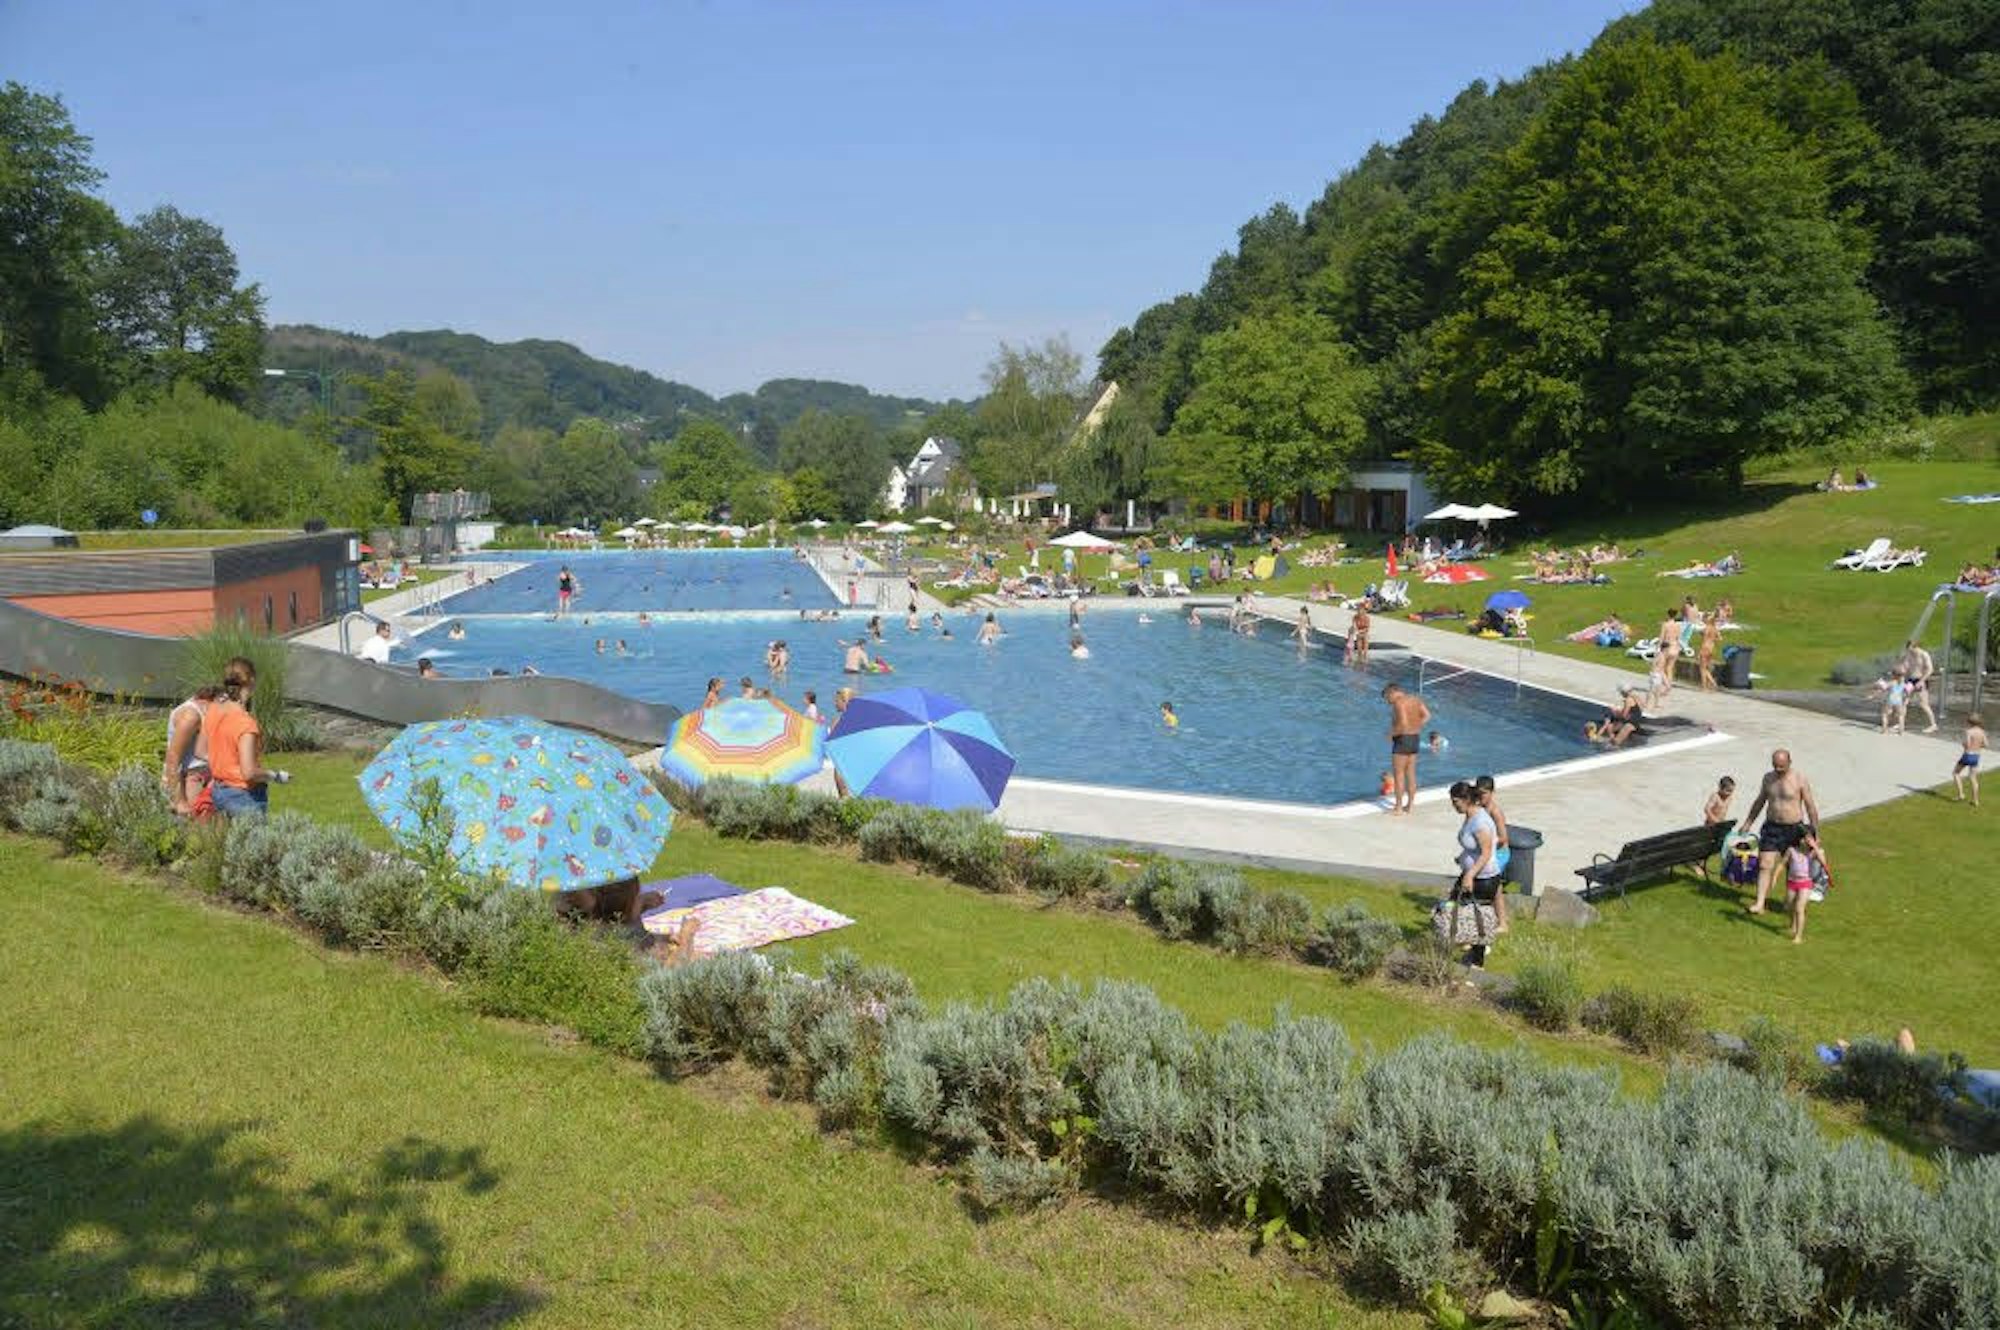 Das Freibad Hoffnungsthal hat große grüne Liegeflächen rund um das Schwimmbecken.